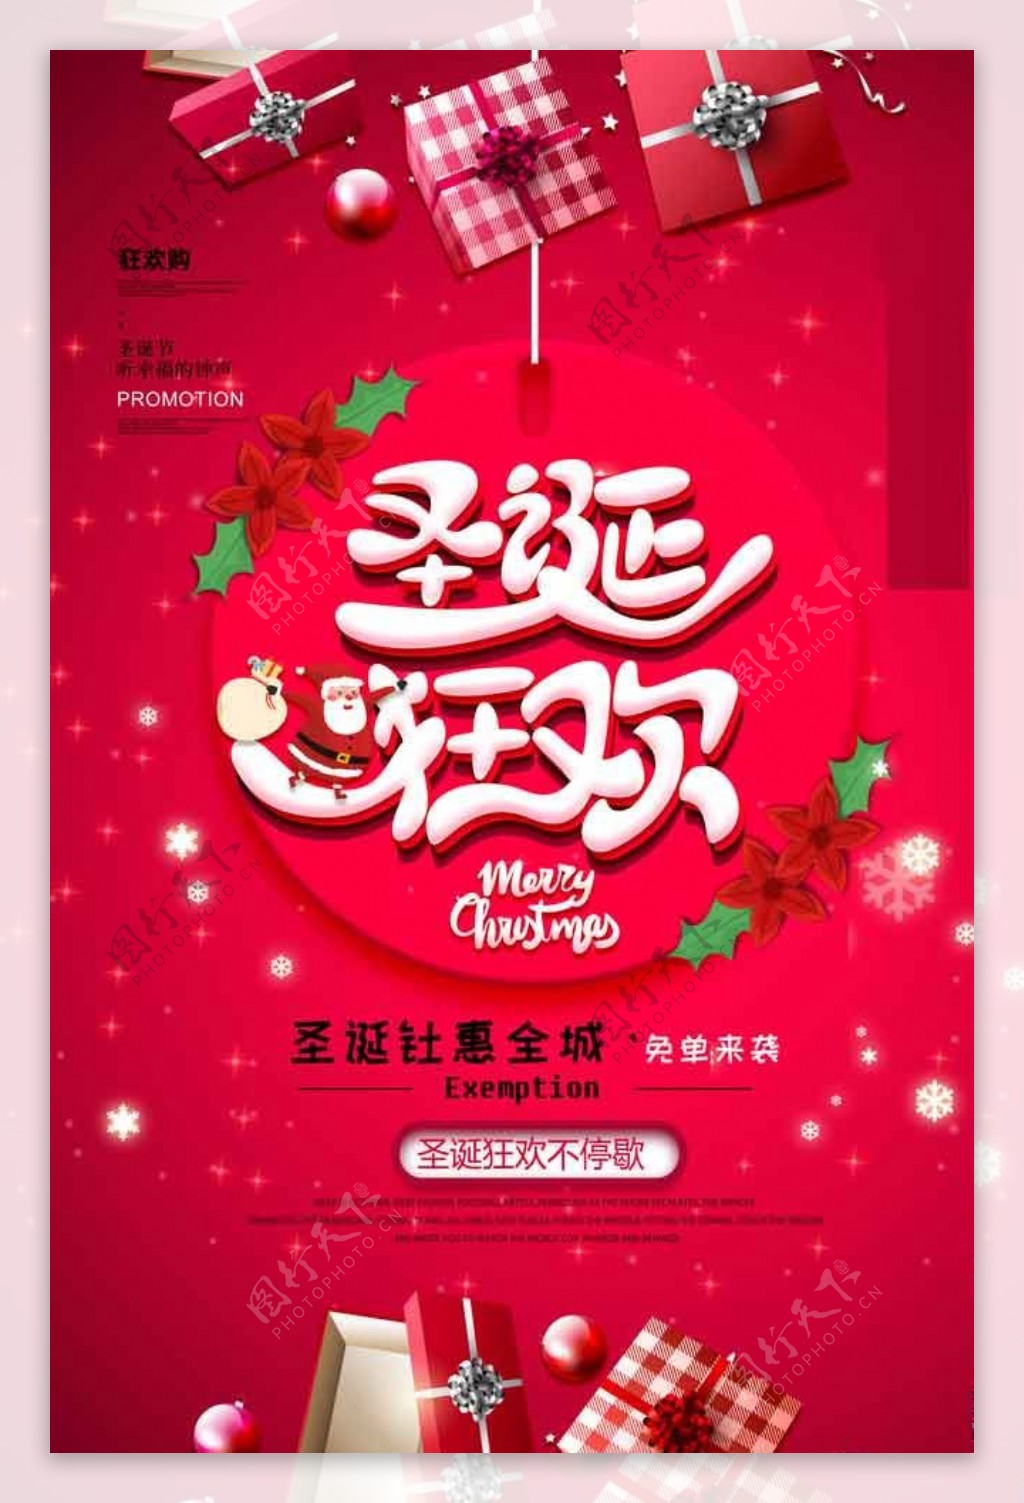 中国红促销圣诞平安夜海报